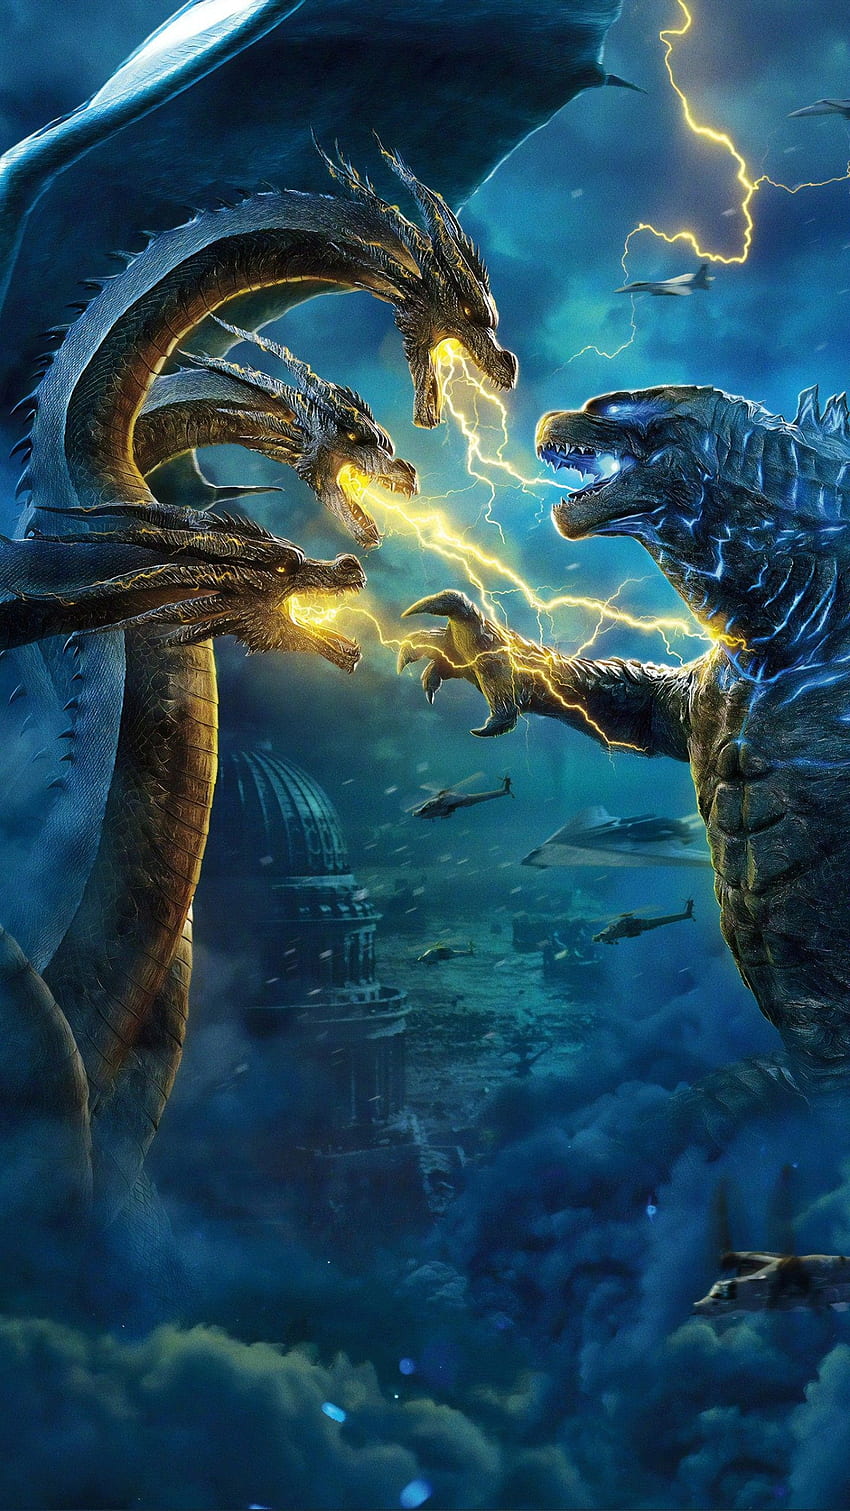 Pin by M.Fuad Arifin on Godzilla | Godzilla wallpaper, Godzilla, King kong  vs godzilla